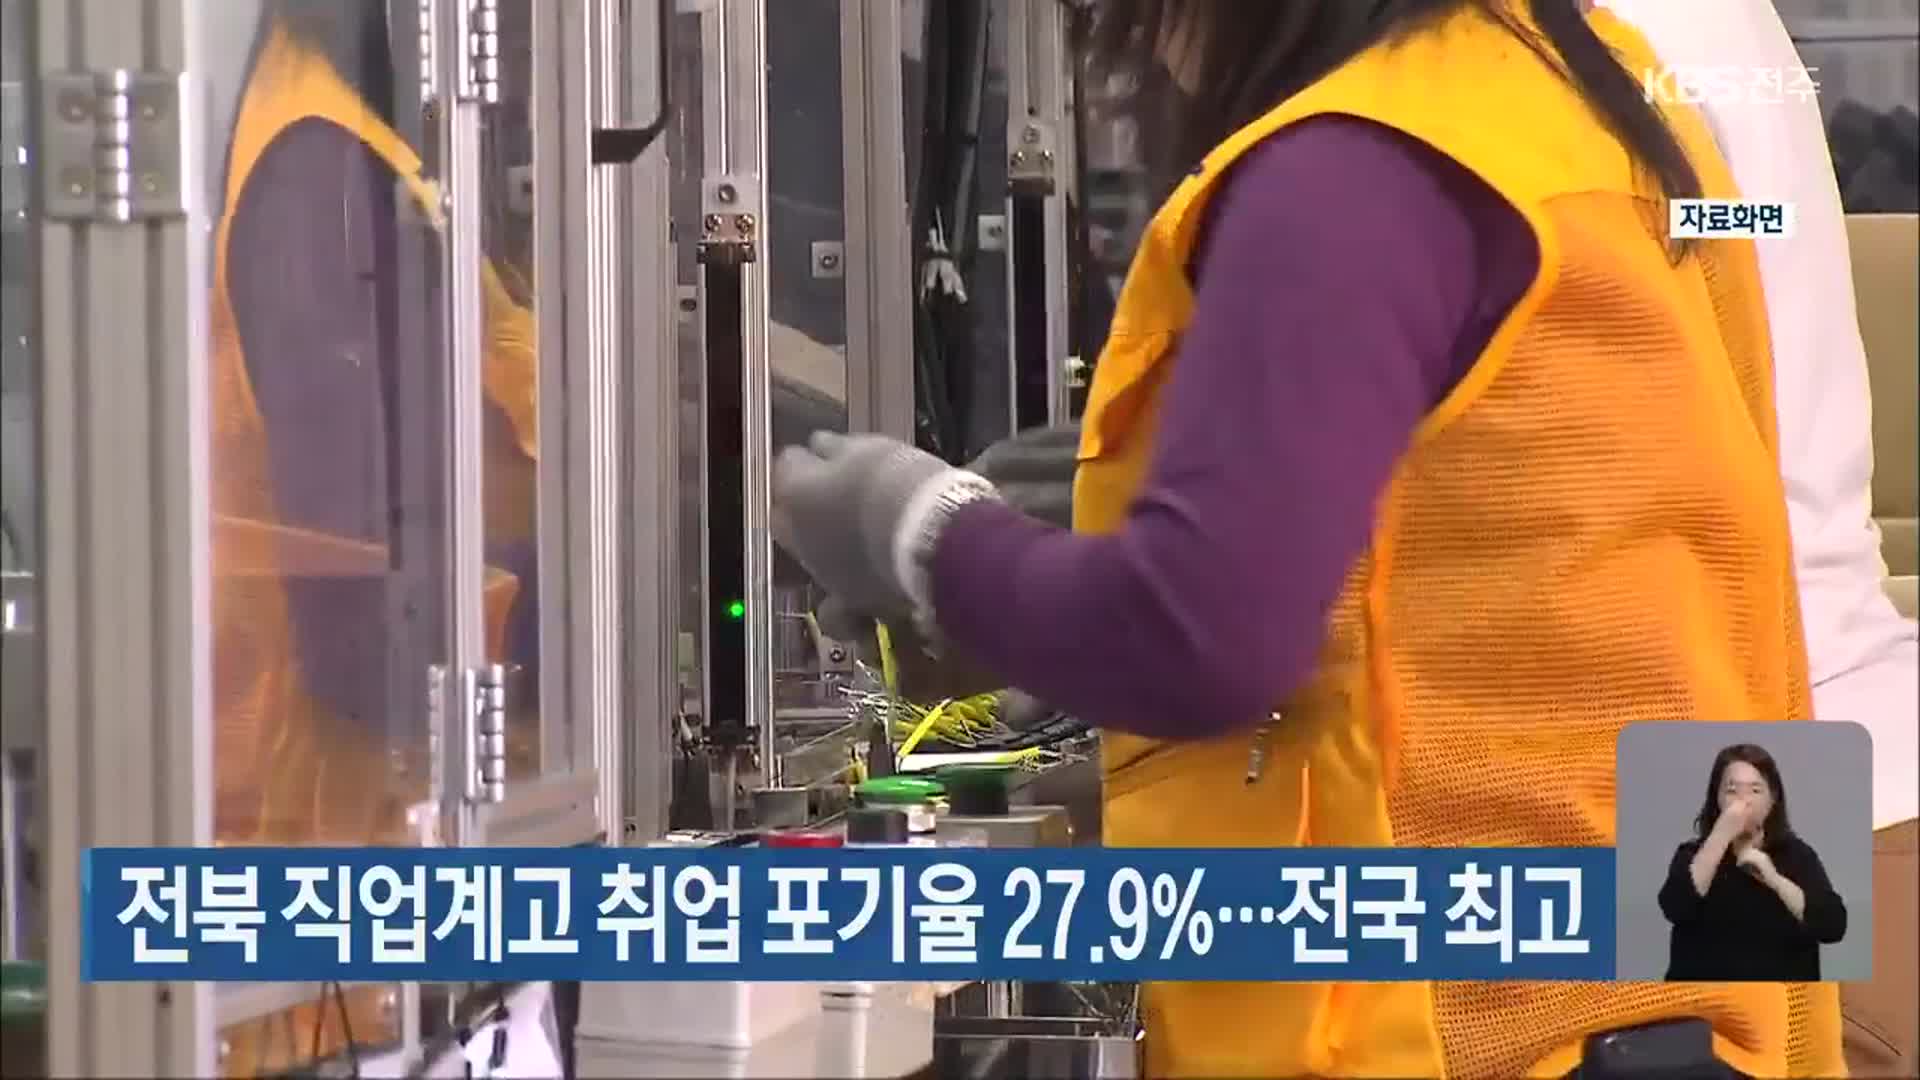 전북 직업계고 취업 포기율 27.9%…전국 최고